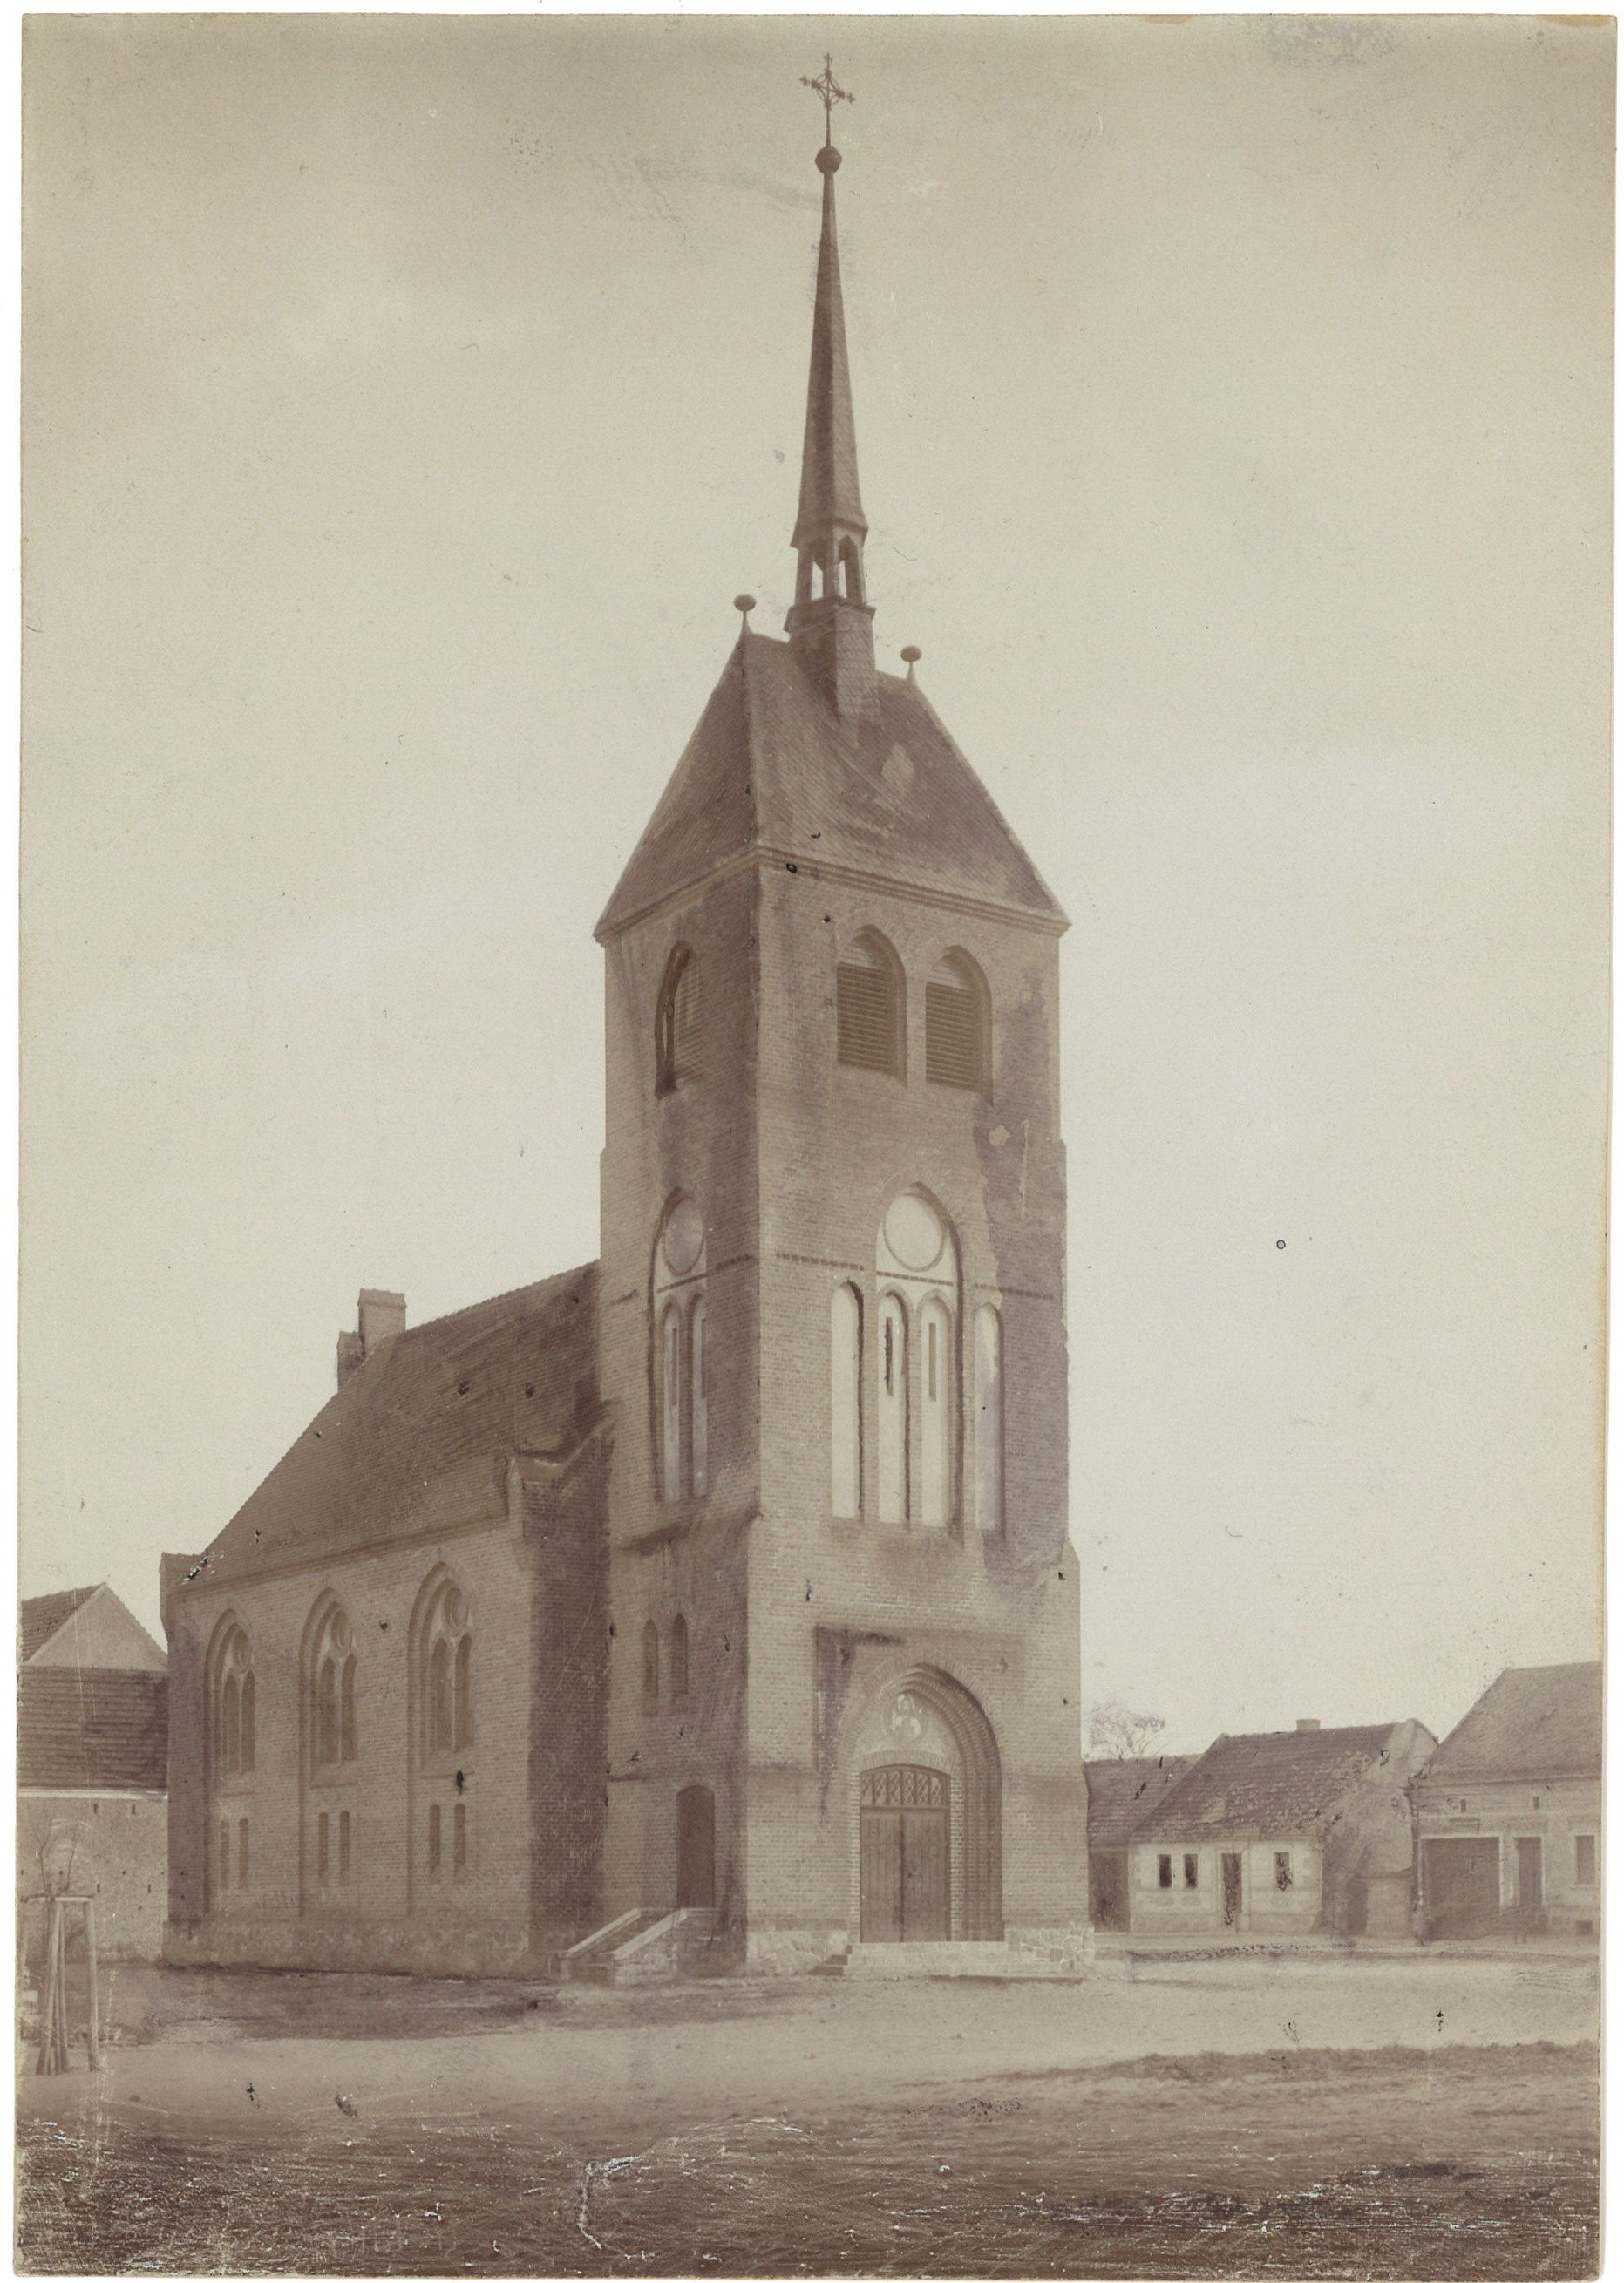 Niebel (Kr. Zauch-Belzig): Neue Dorfkirche von Nordwesten (Landesgeschichtliche Vereinigung für die Mark Brandenburg e.V., Archiv CC BY)